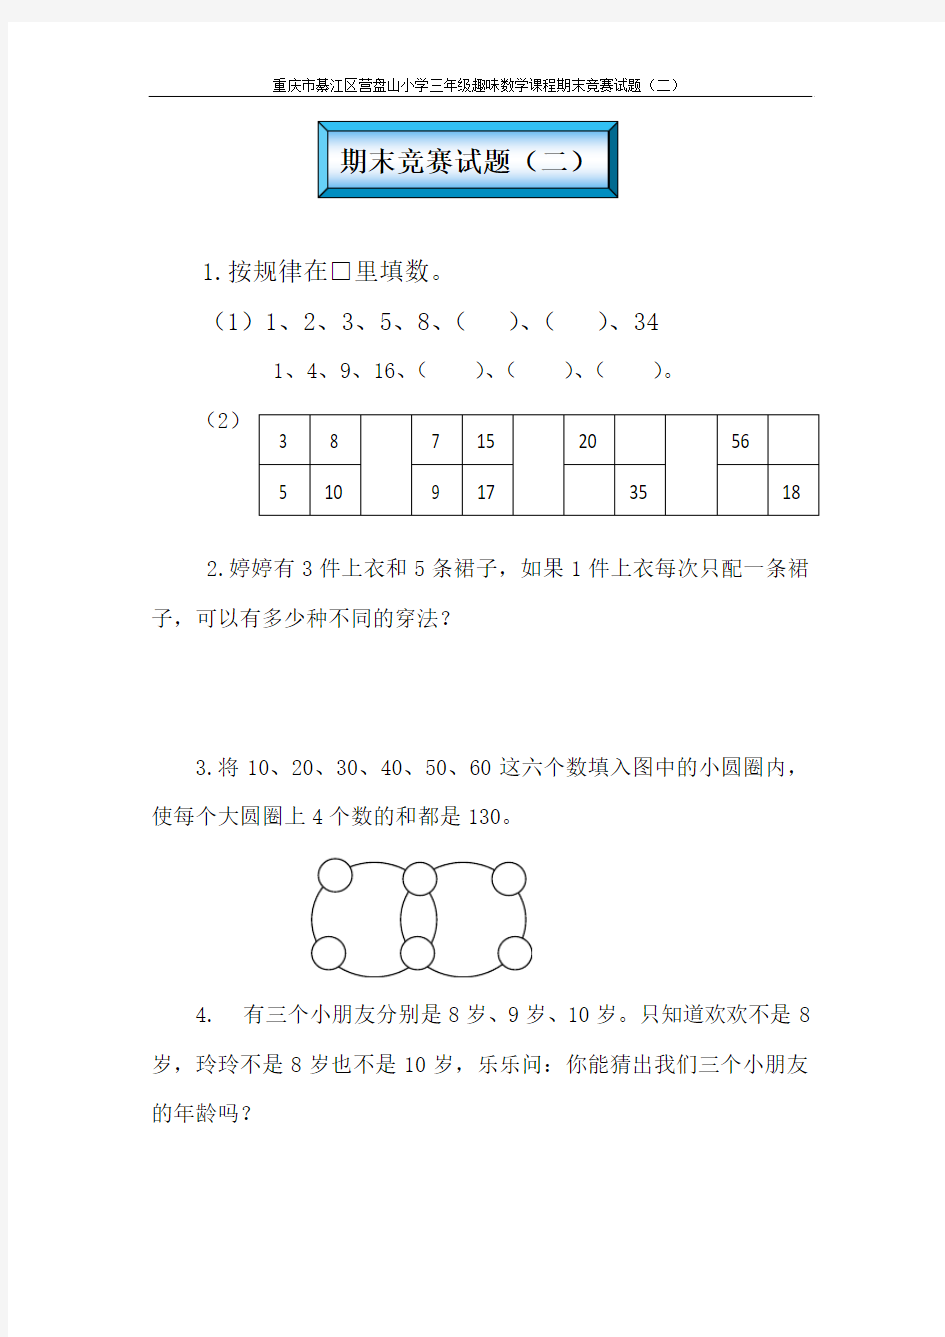 重庆綦江区营盘山小学二年级趣味数学课程期末竞赛试题(二)